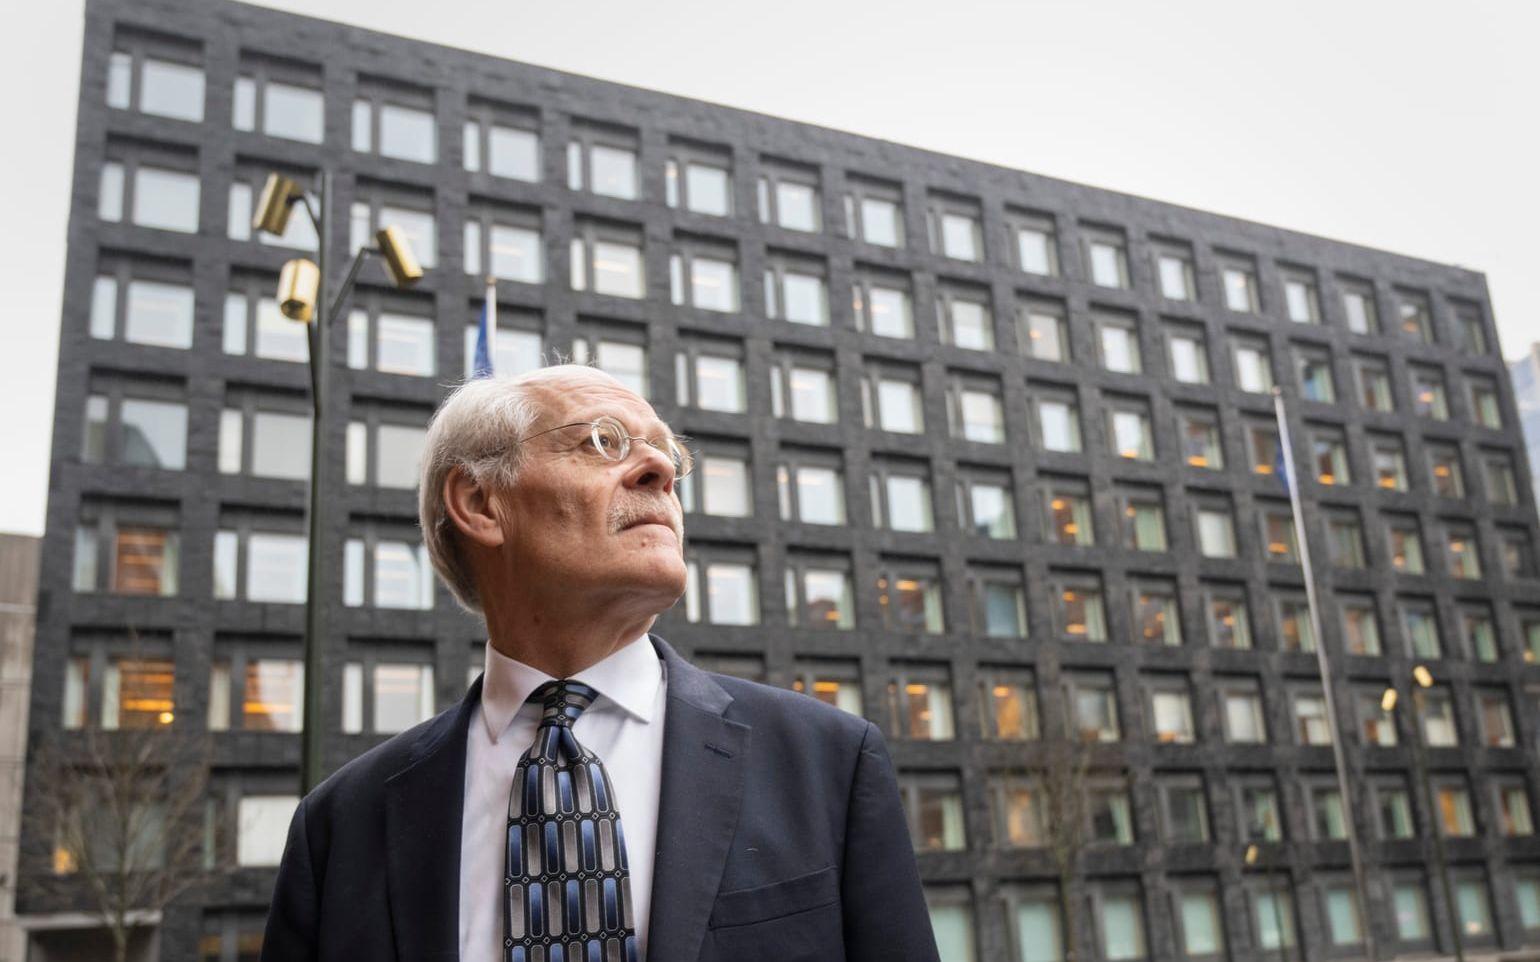 Förre riksbankschefen Stefan Ingves lämnar Riksbanken efter många år på posten.